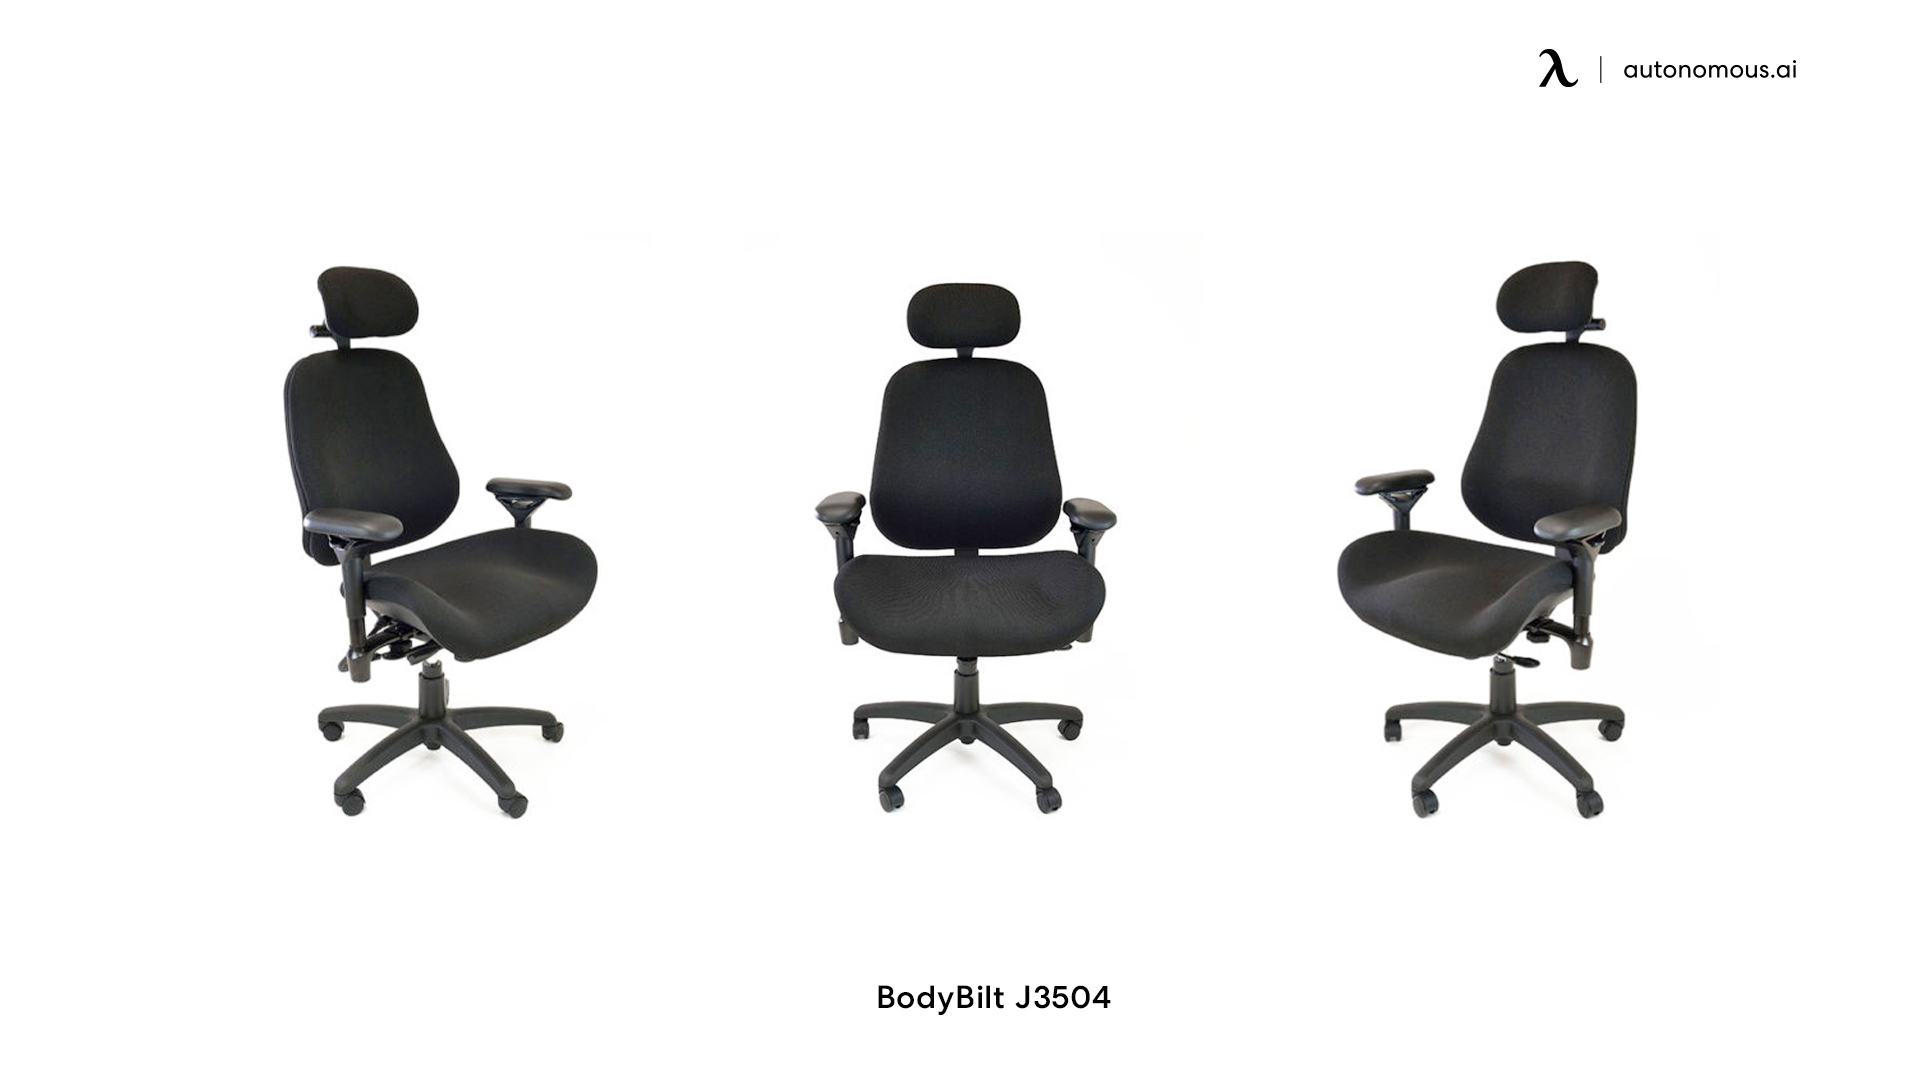 BodyBilt J3504 large office chair